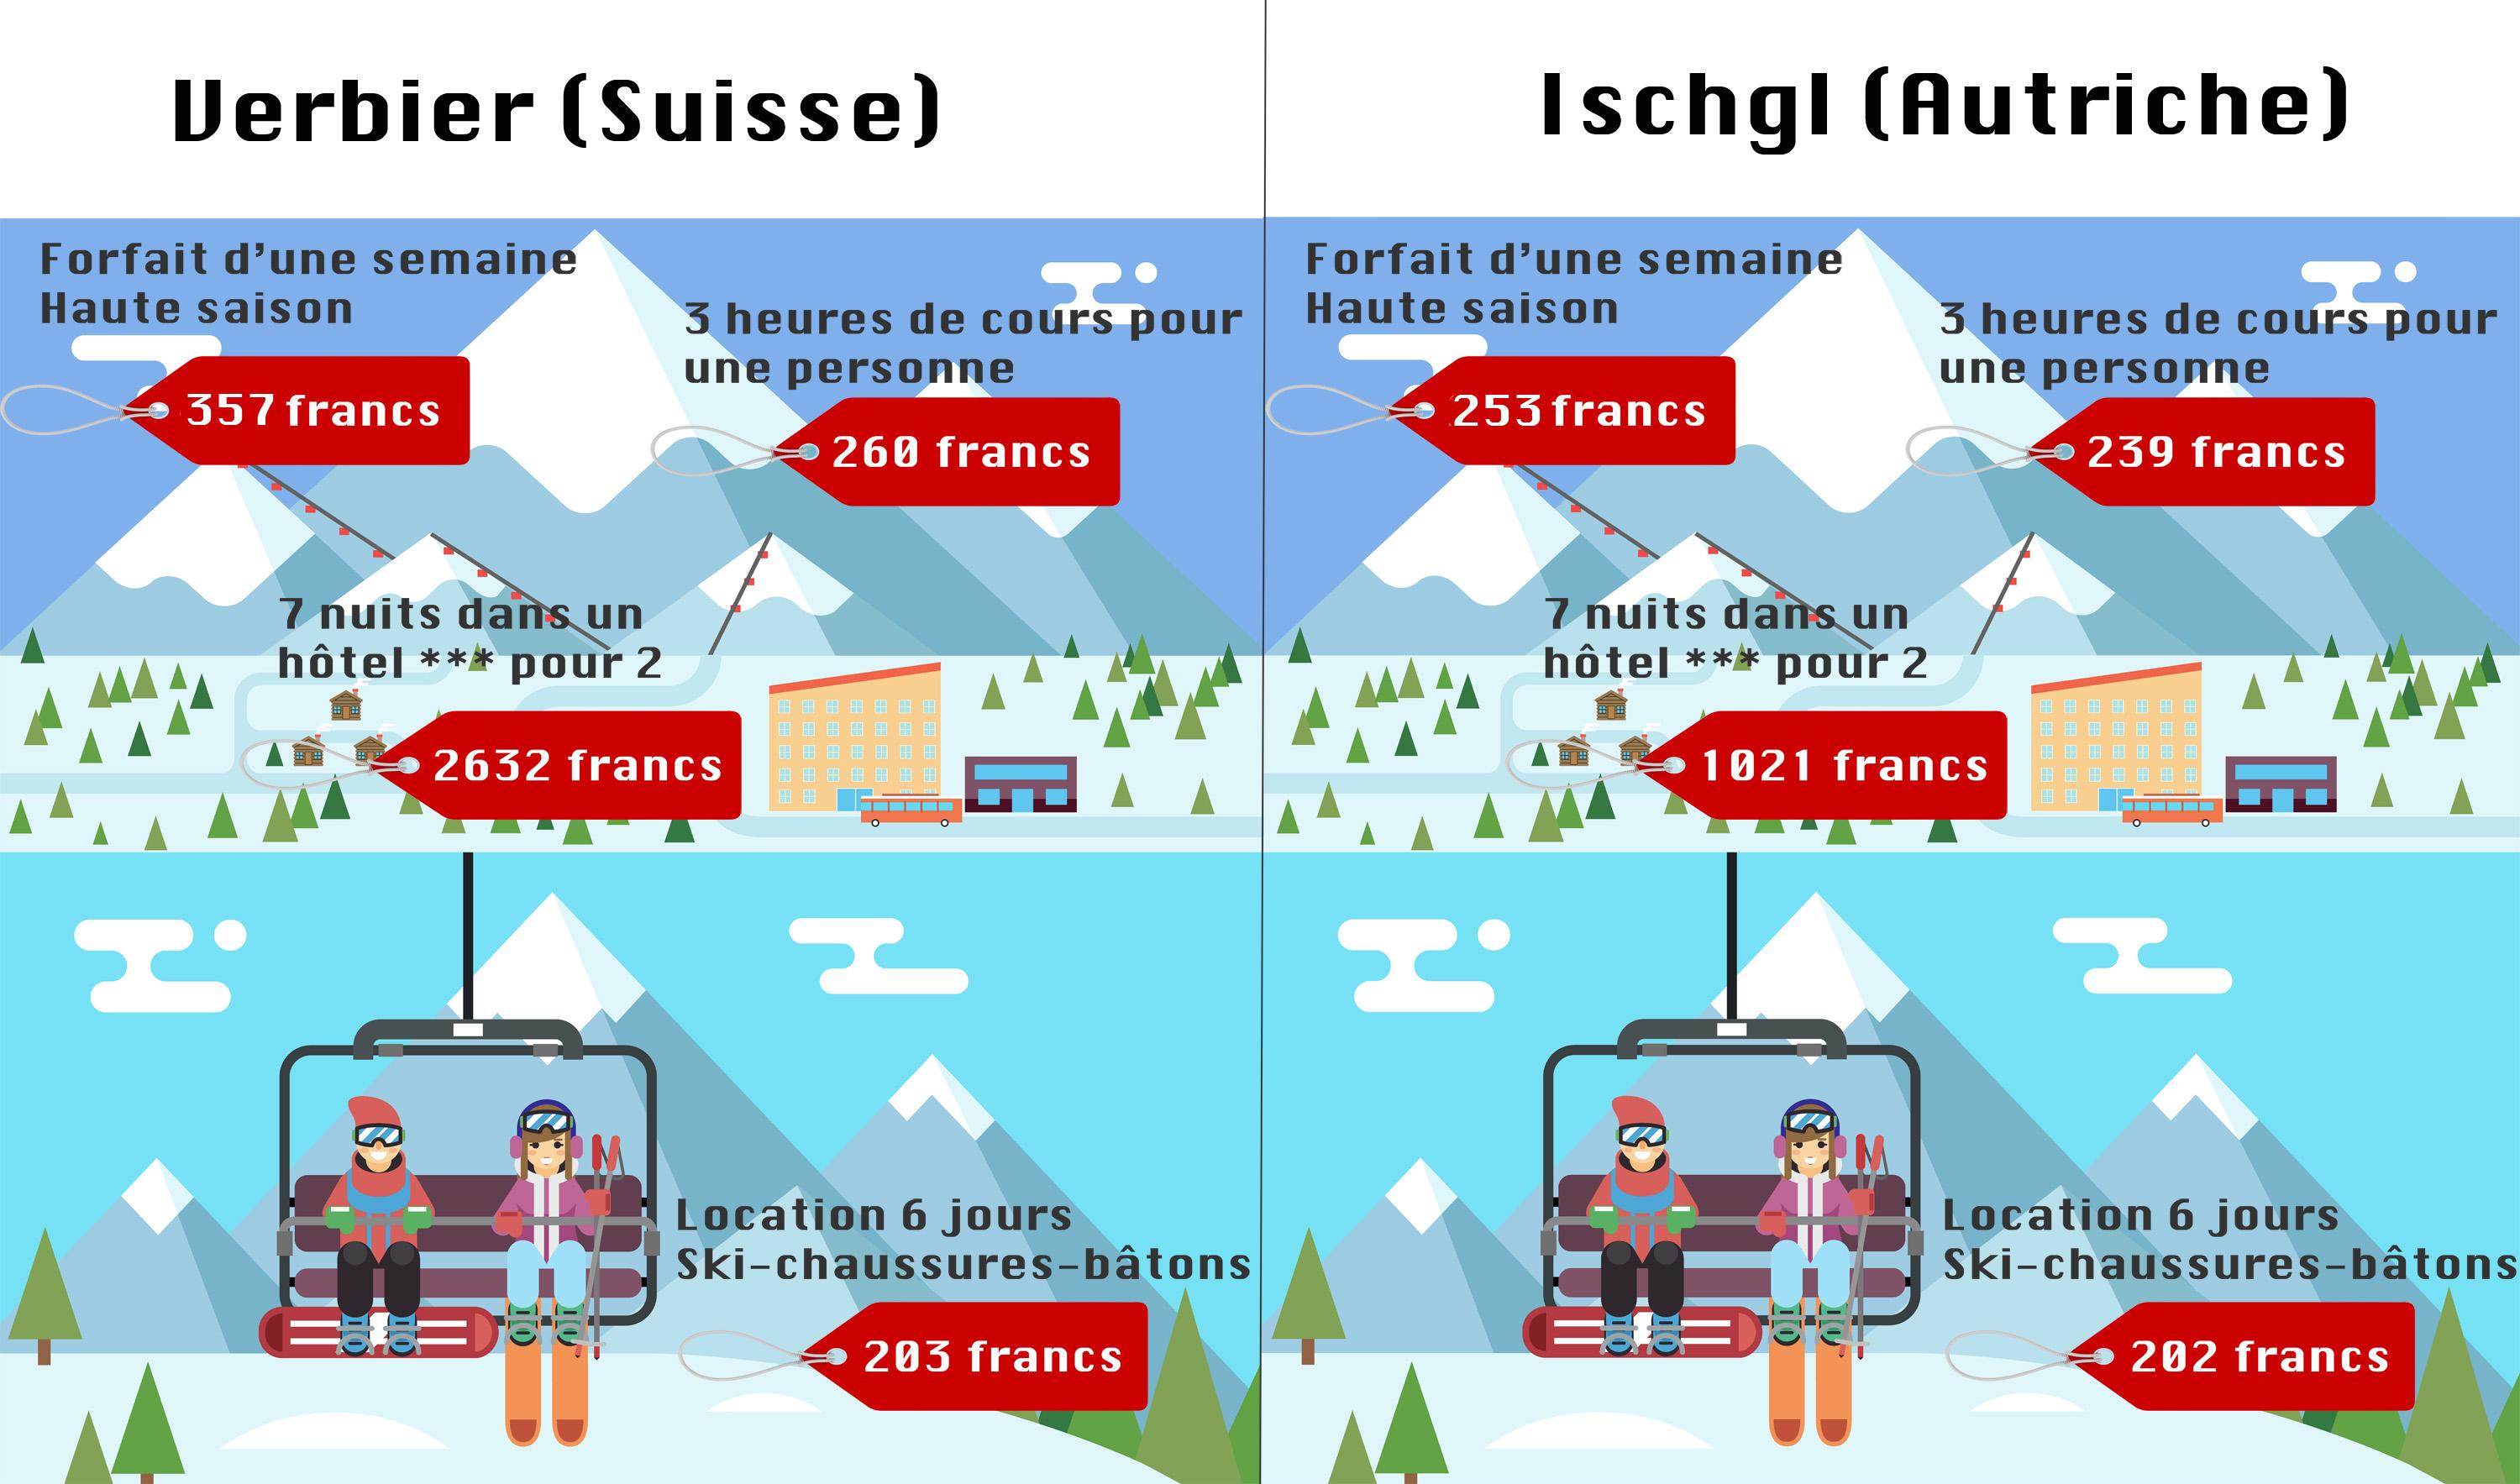 La comparaison entre les deux stations de ski. [Infographie Cécile Rais, Image Fotolia]